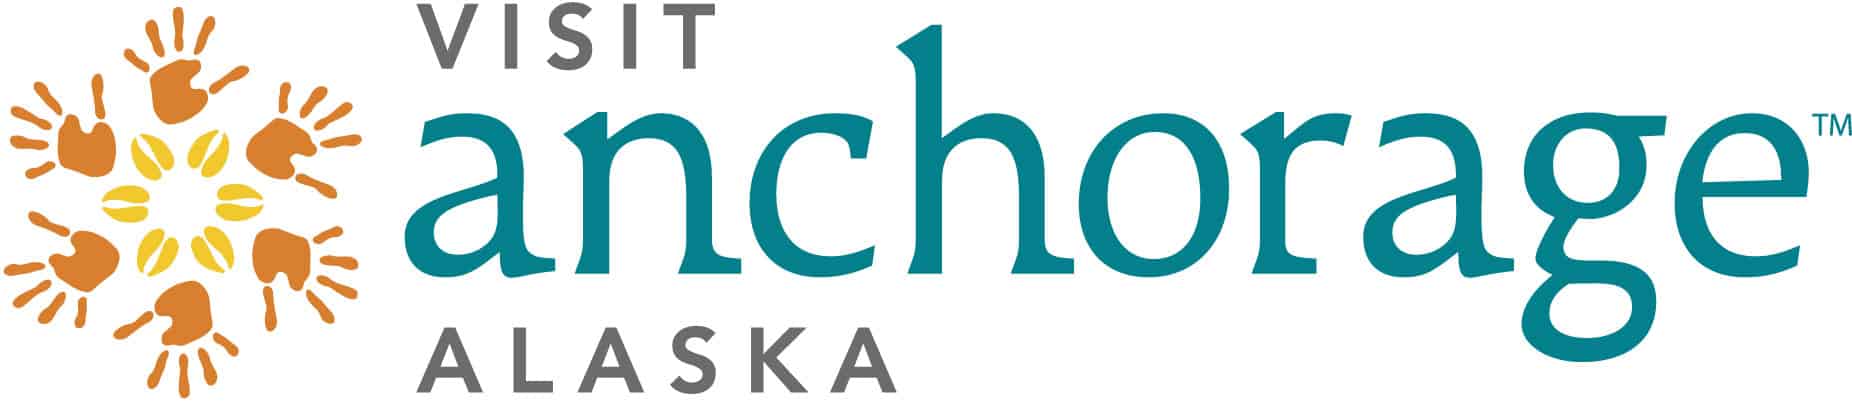 Visit Alaska logo